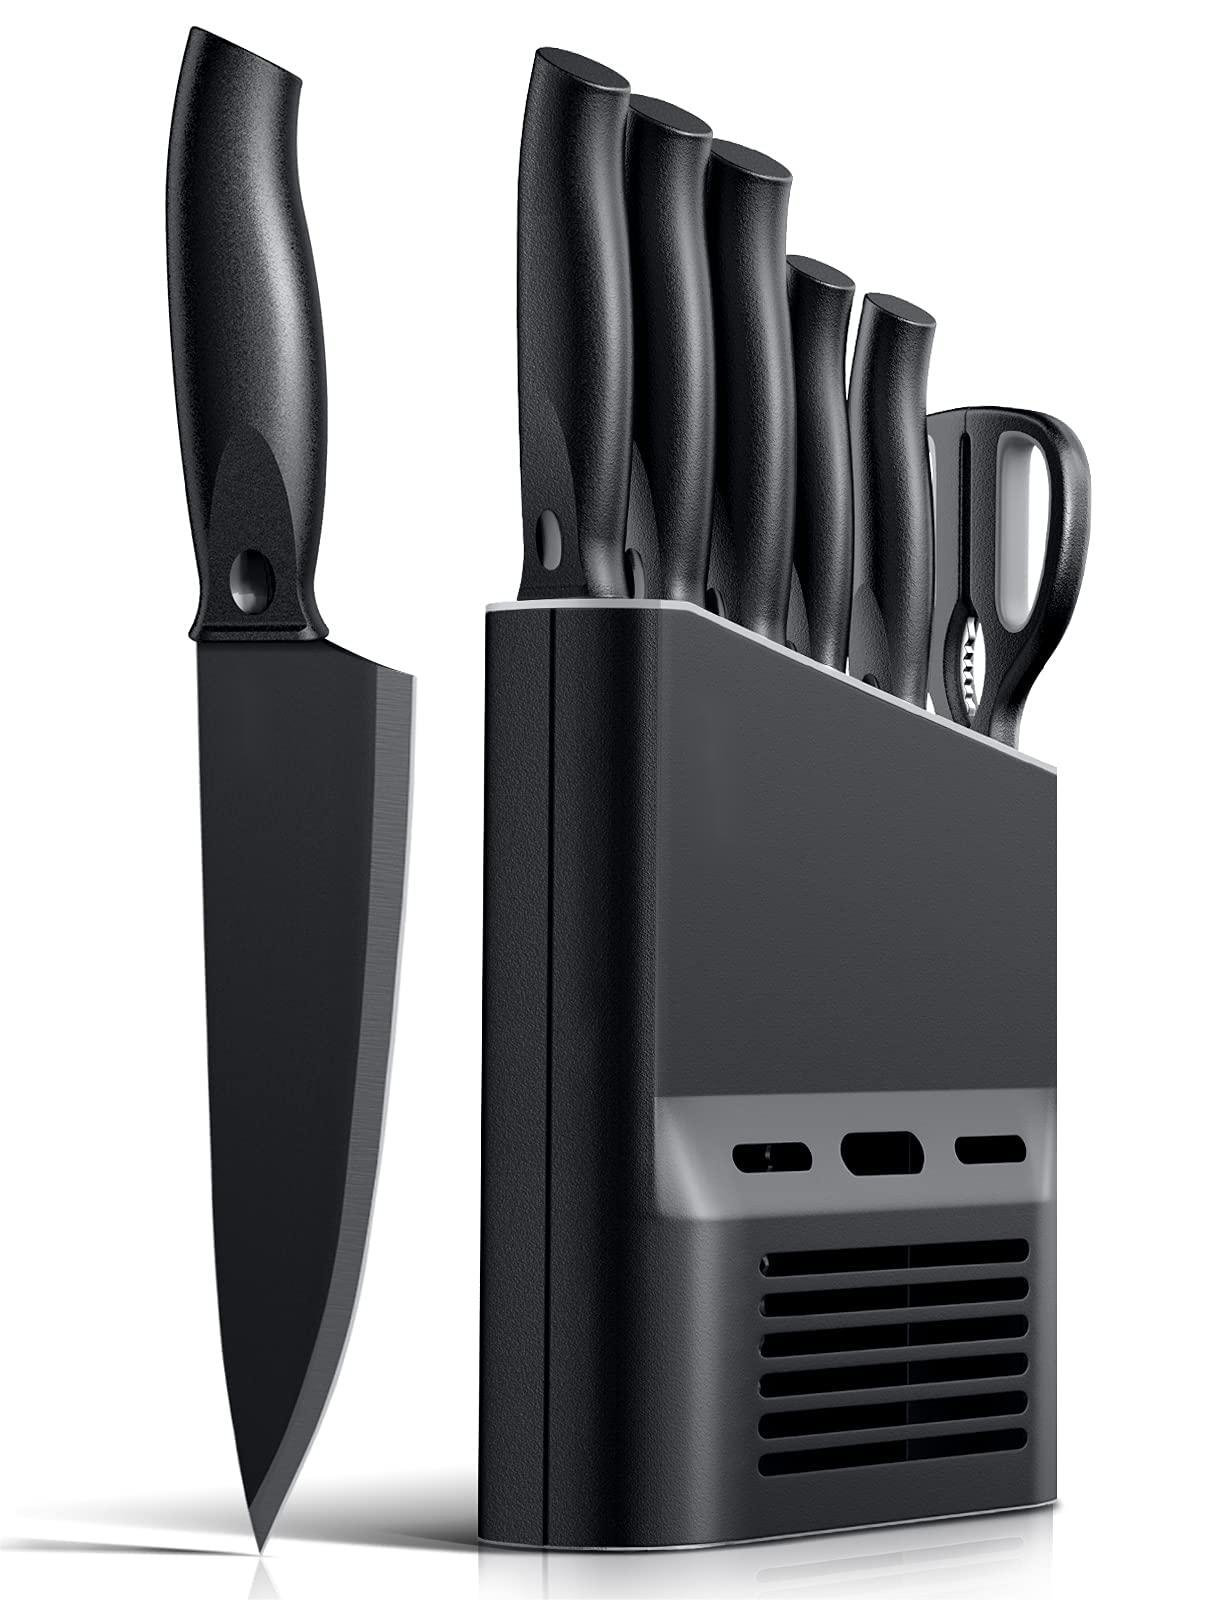 https://assets.wfcdn.com/im/67158880/compr-r85/2535/253509482/fish-hunter-7-piece-high-carbon-stainless-steel-knife-block-set.jpg